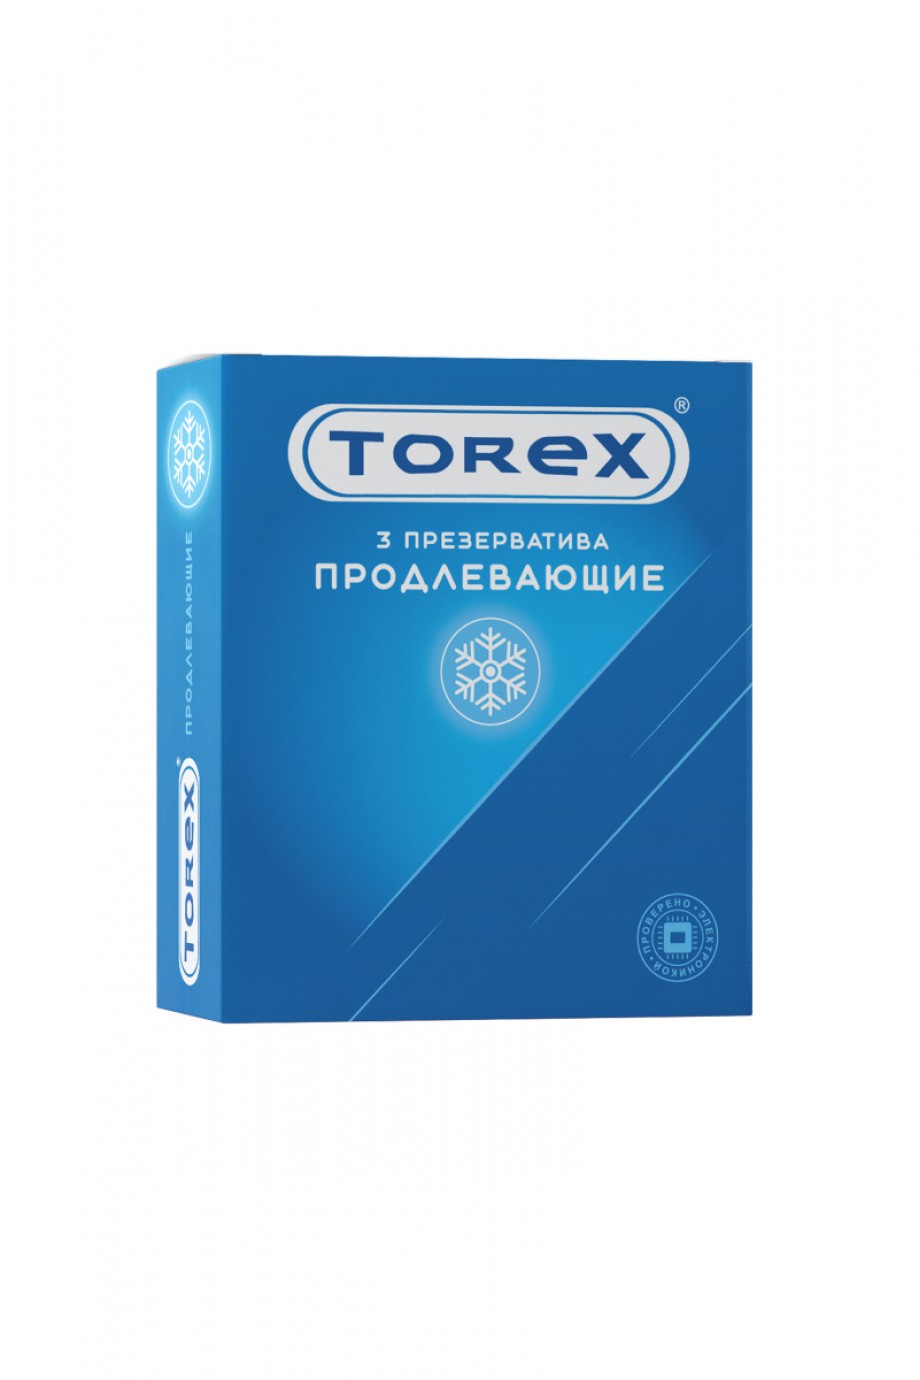 Презервативы TOREX продлевающие, латекс, 3 шт